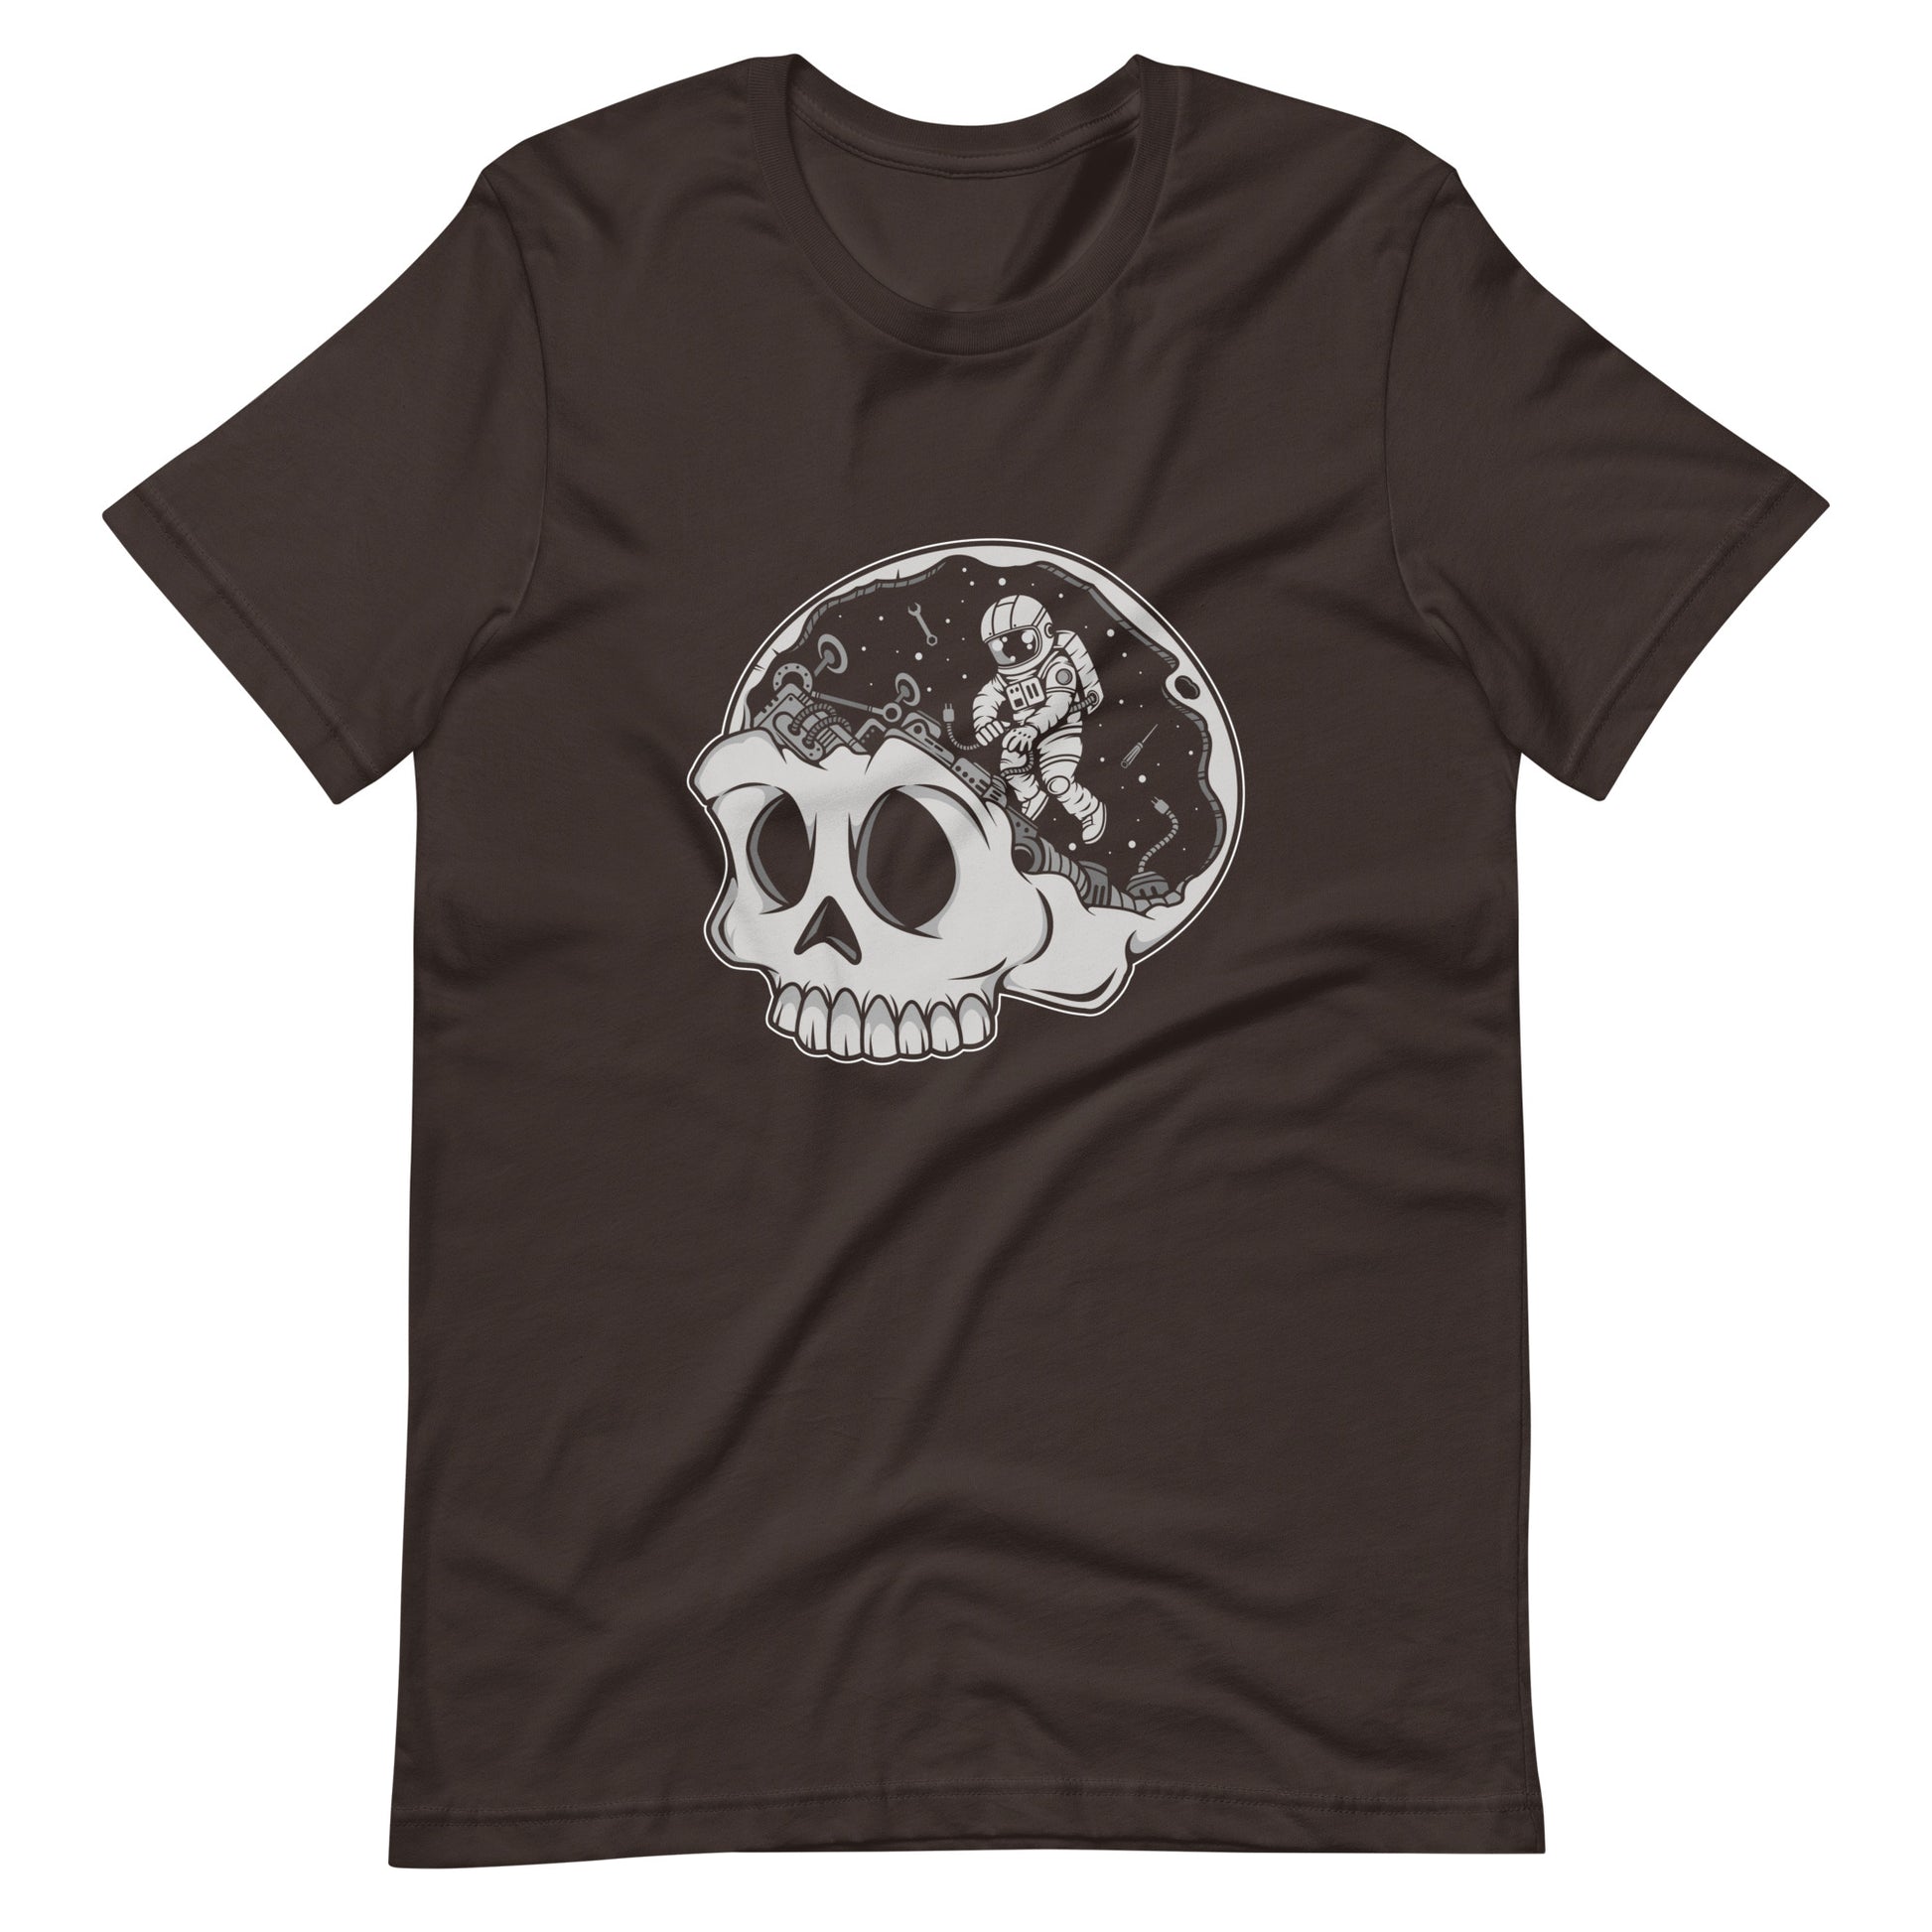 Astronaut Skull Brain - Men's t-shirt - Brown Front